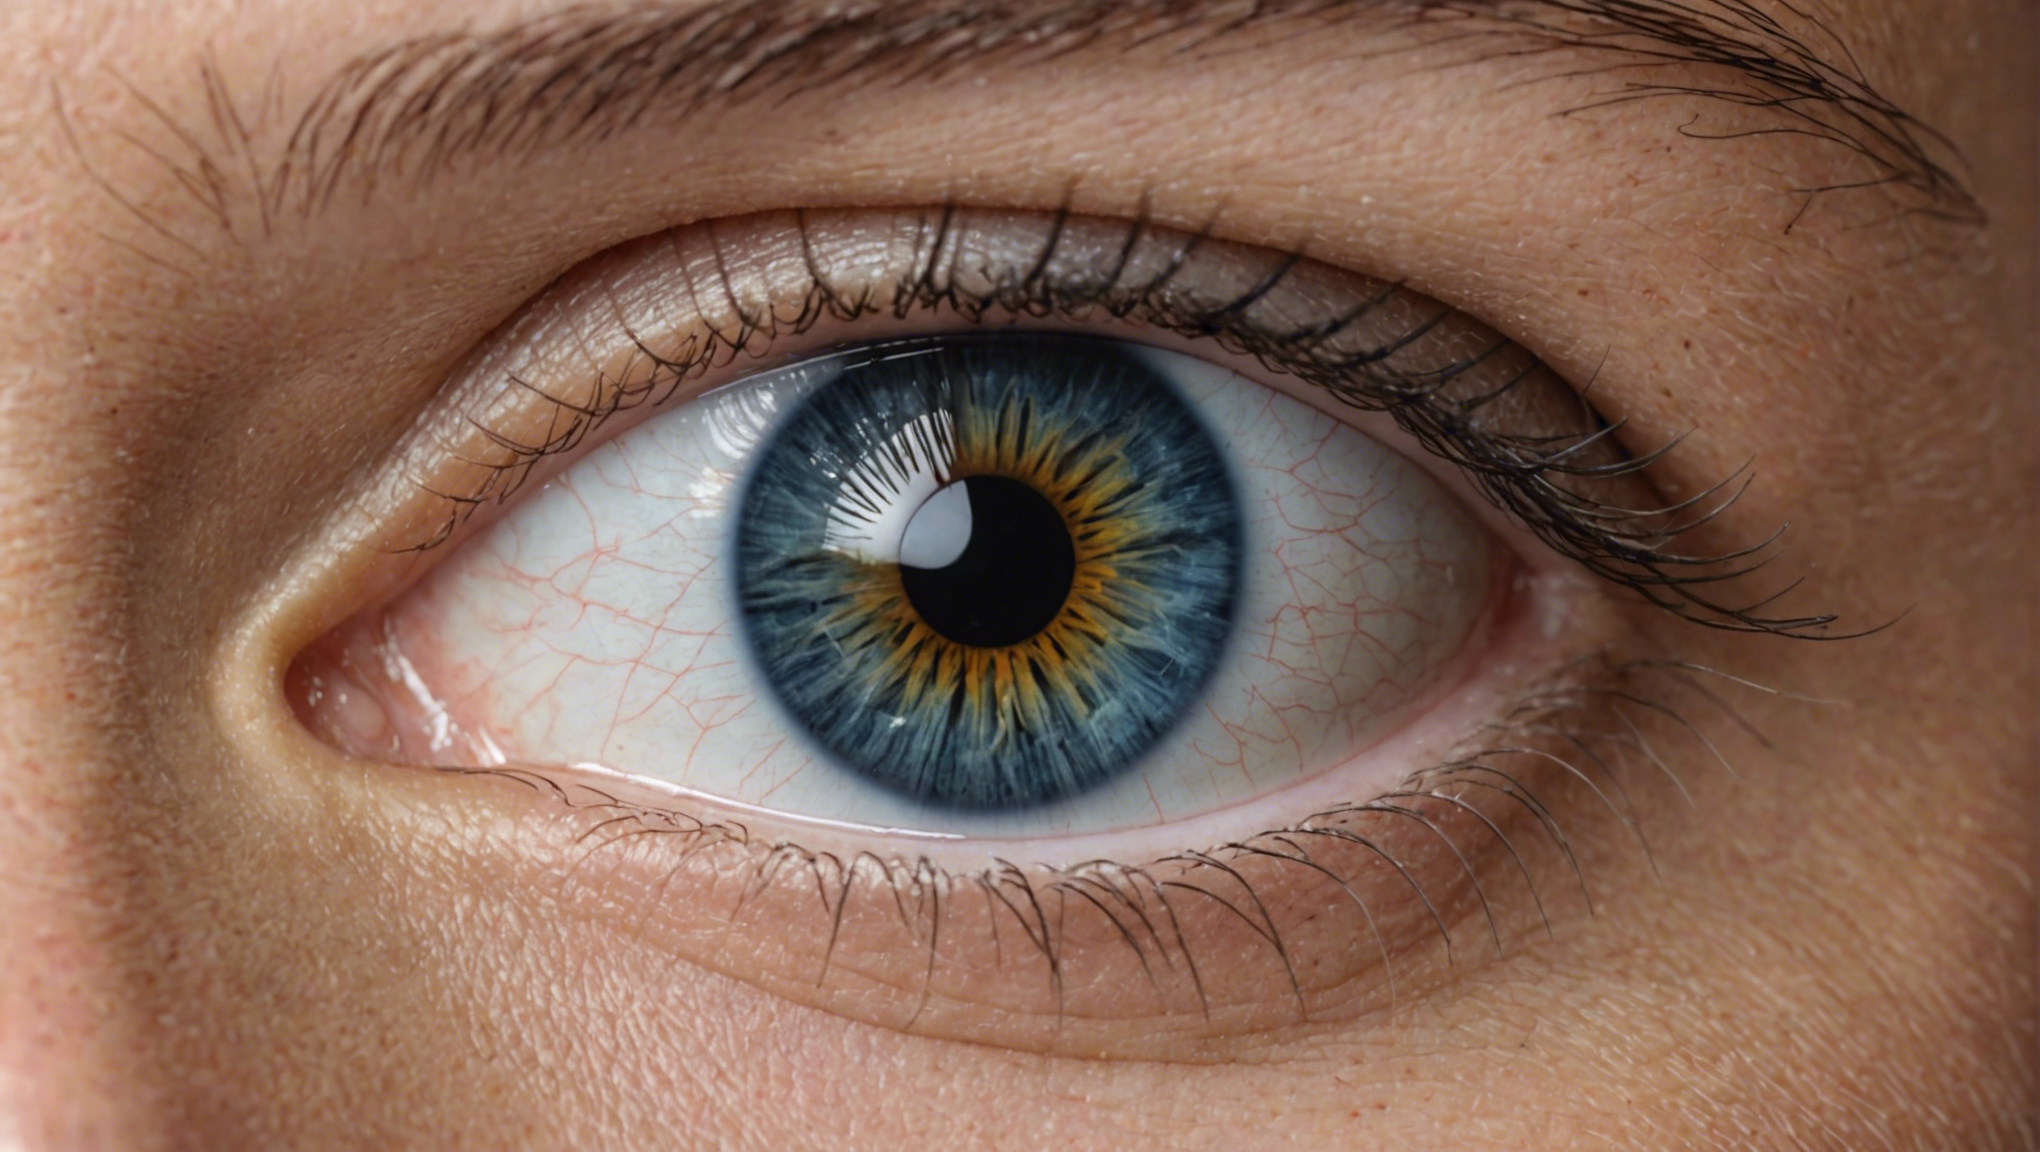 découvrez tout ce qu'il faut savoir sur le glaucome, ses symptômes, ses traitements et ses complications, pour mieux comprendre cette maladie oculaire.